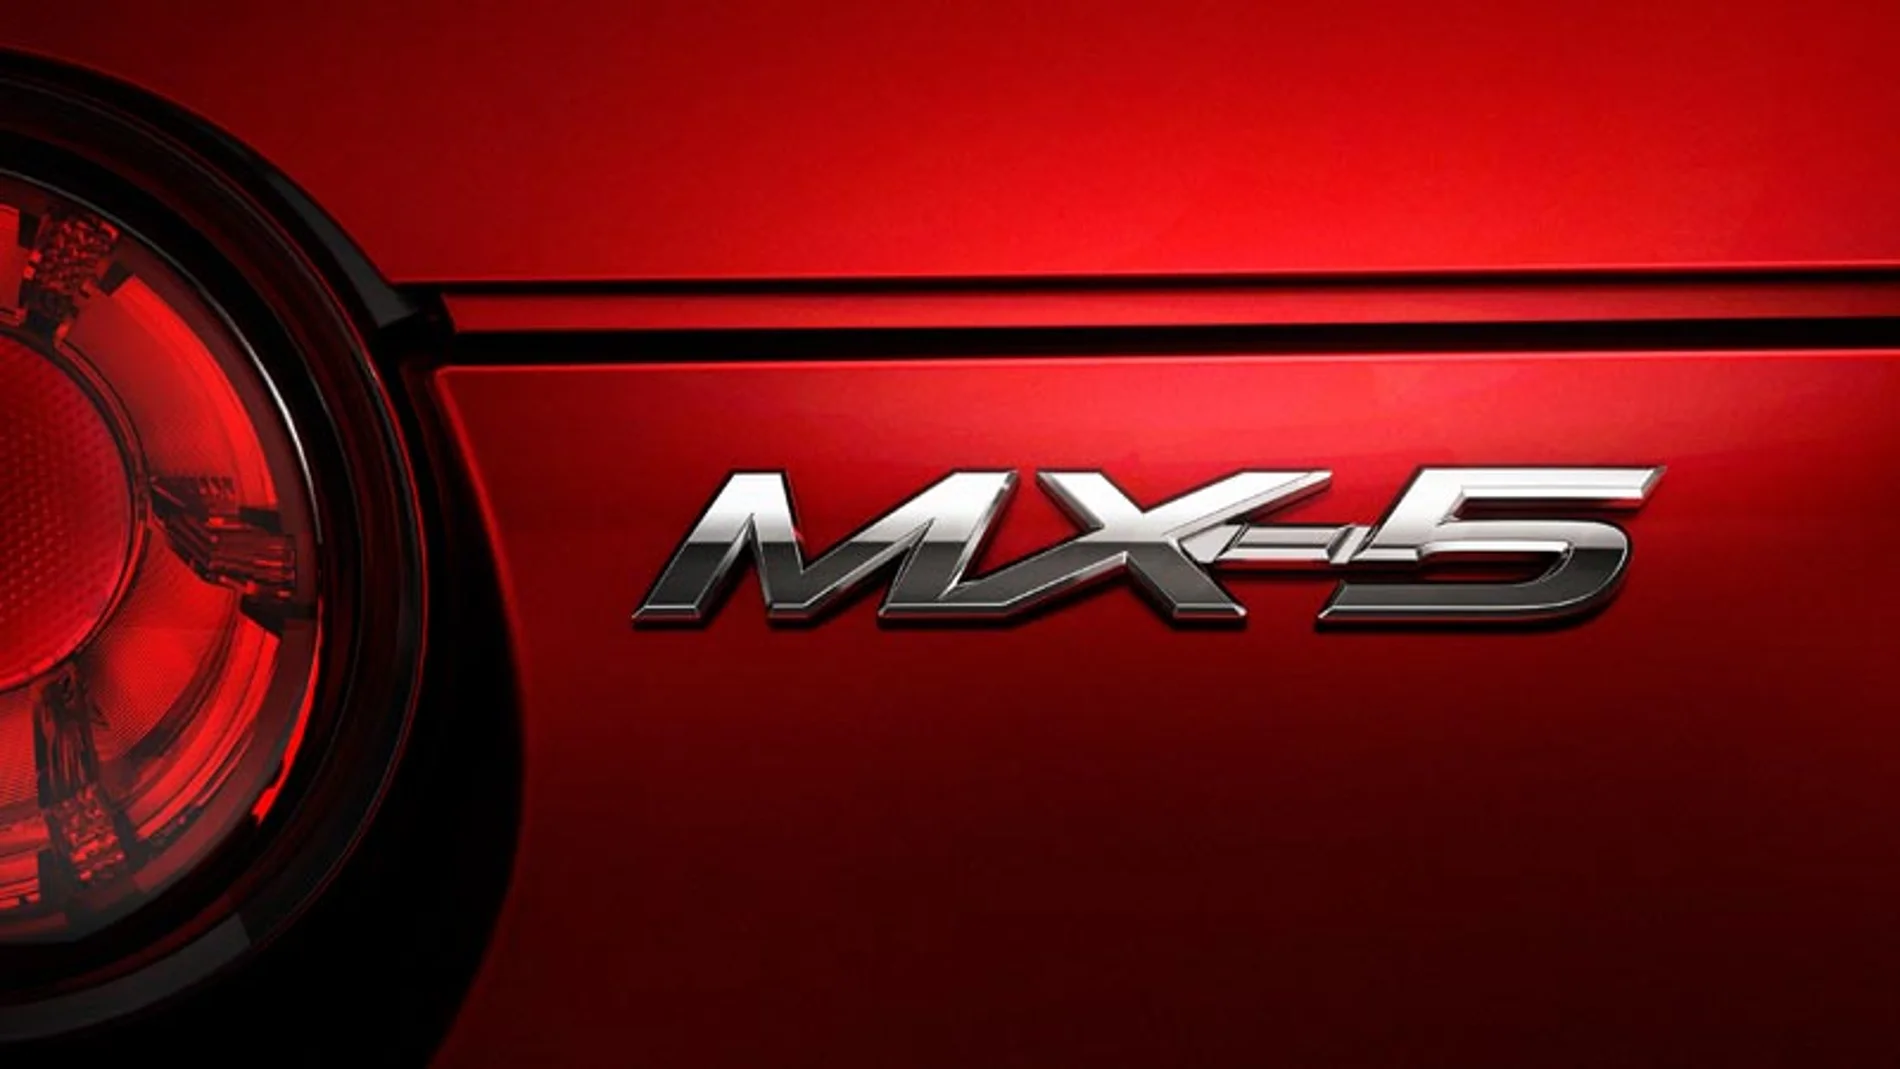 La marca ha fabricado 947.000 unidades del MX-5 desde su llegara al mercado en 1989.